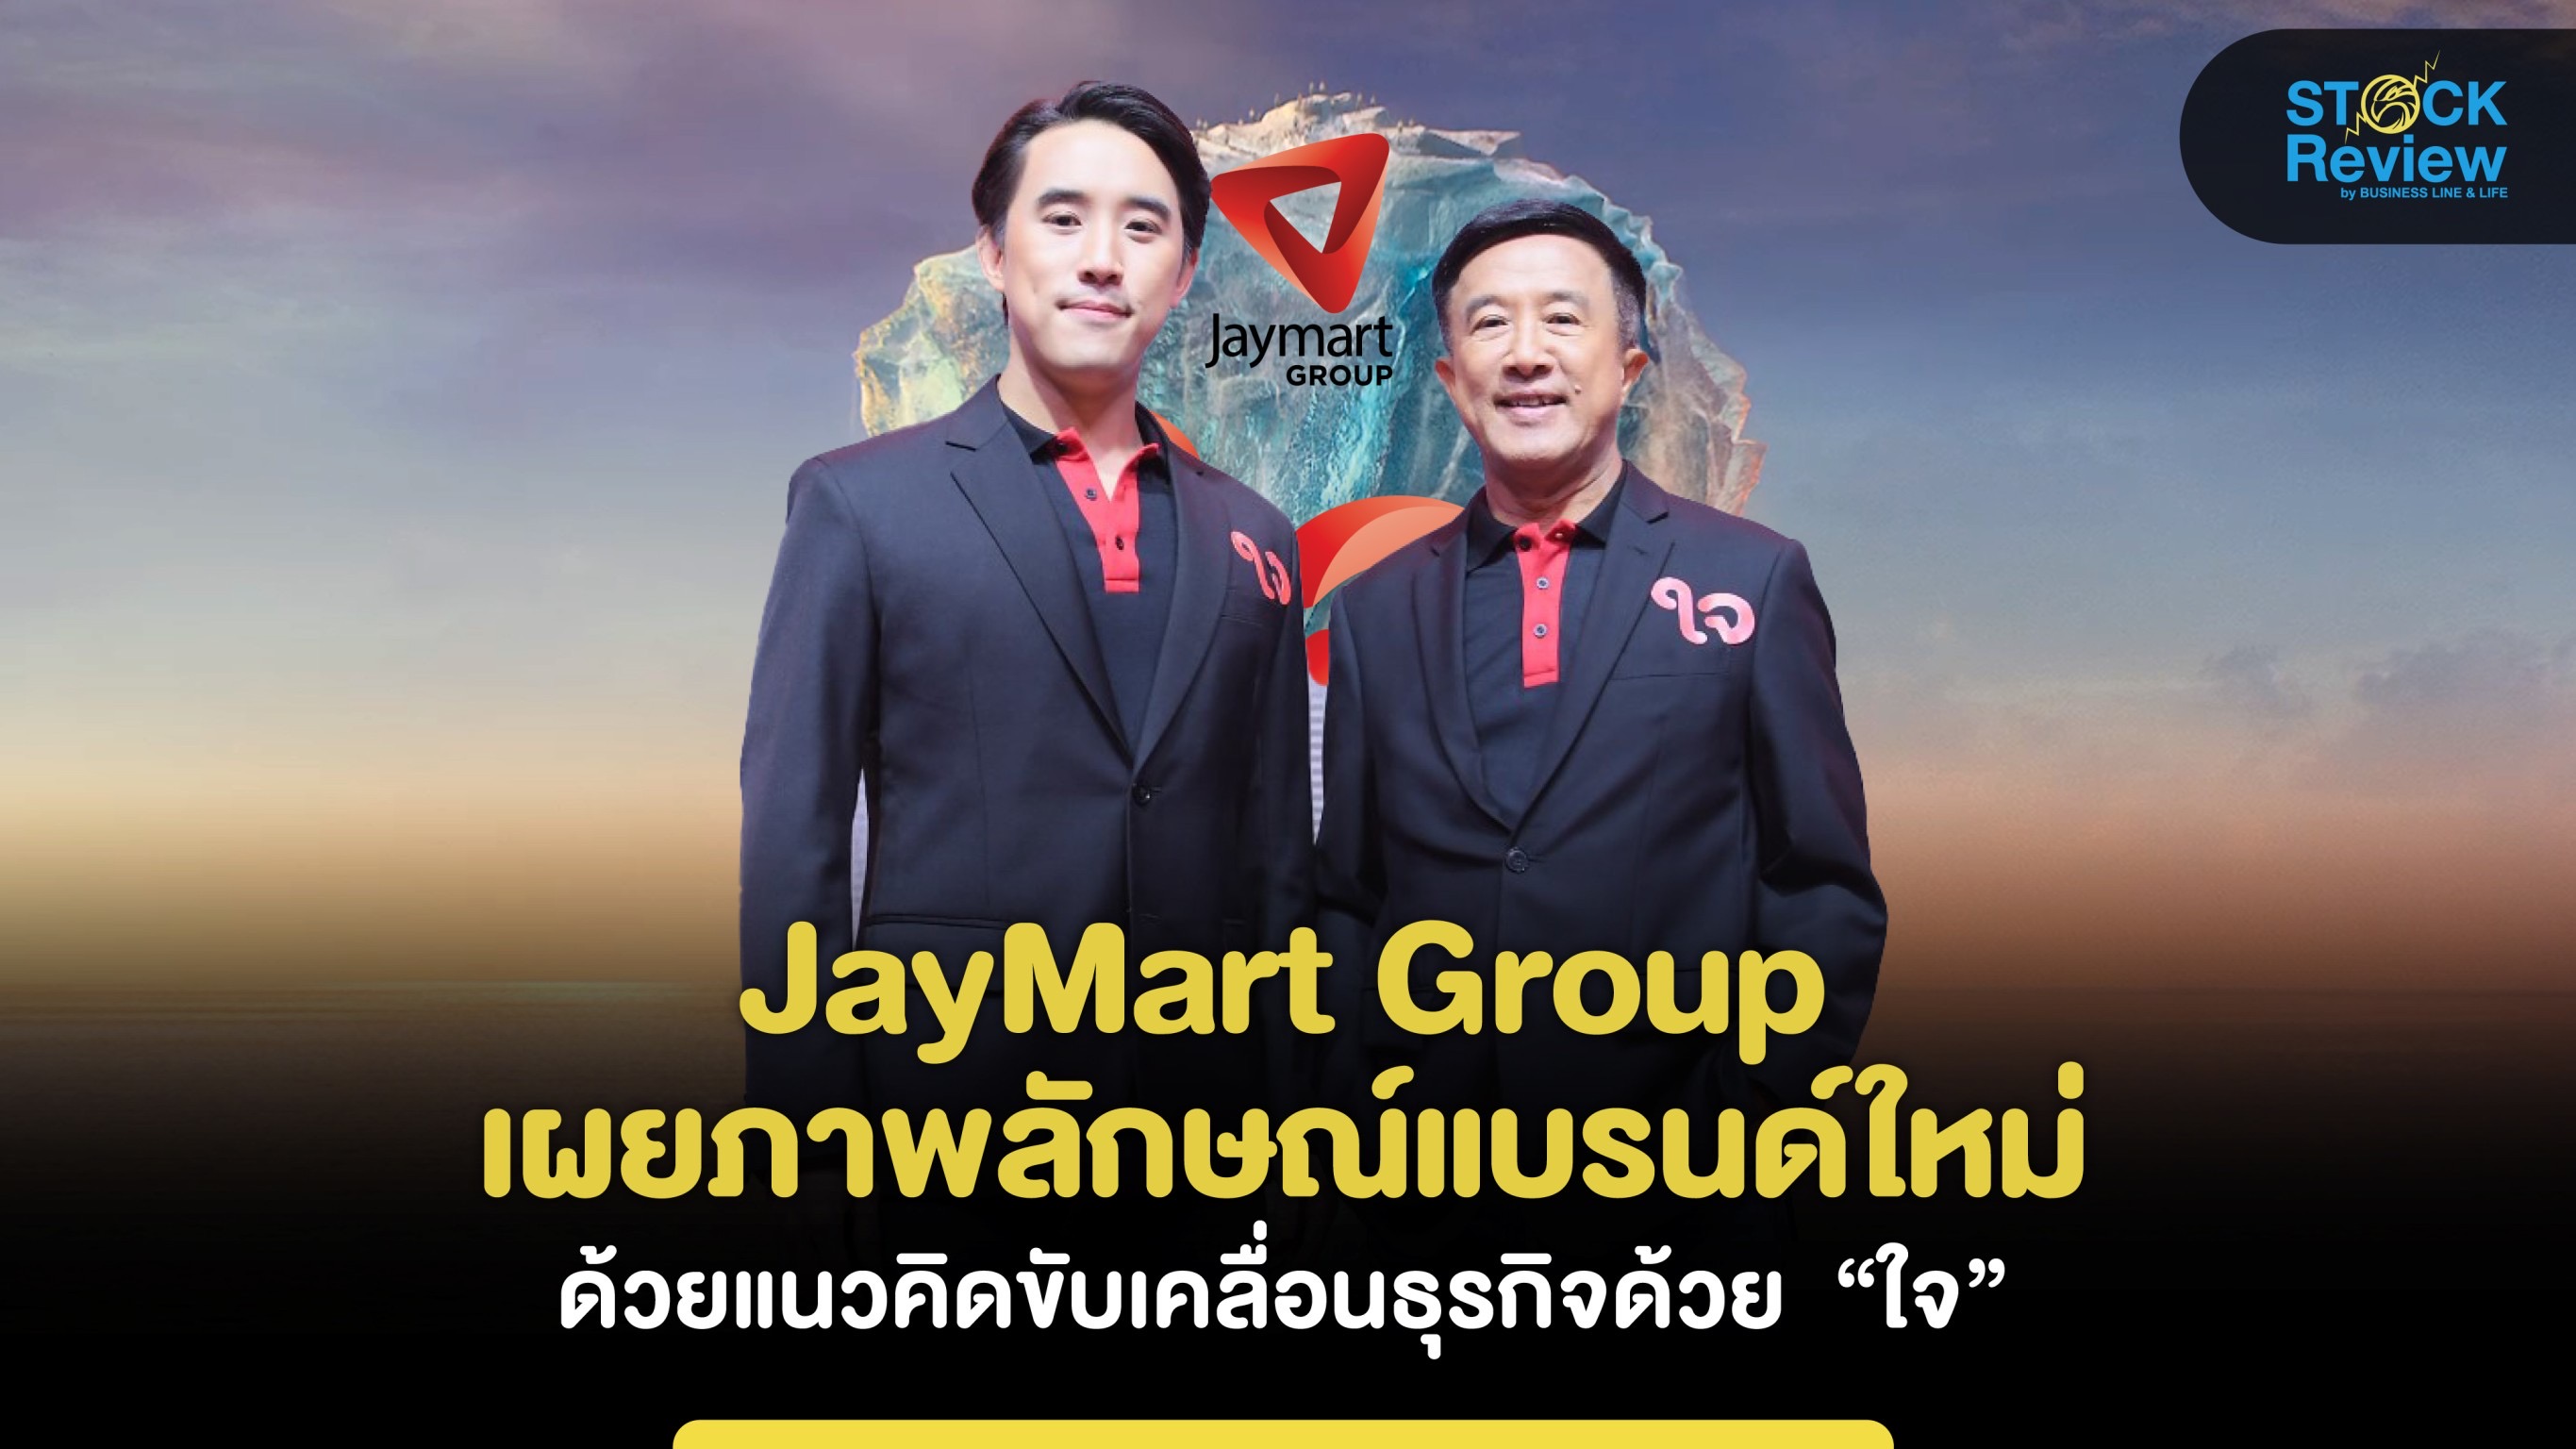 JayMart Group เผยภาพลักษณ์แบรนด์ใหม่ด้วยแนวคิดขับเคลื่อนธุรกิจด้วย  “ใจ”